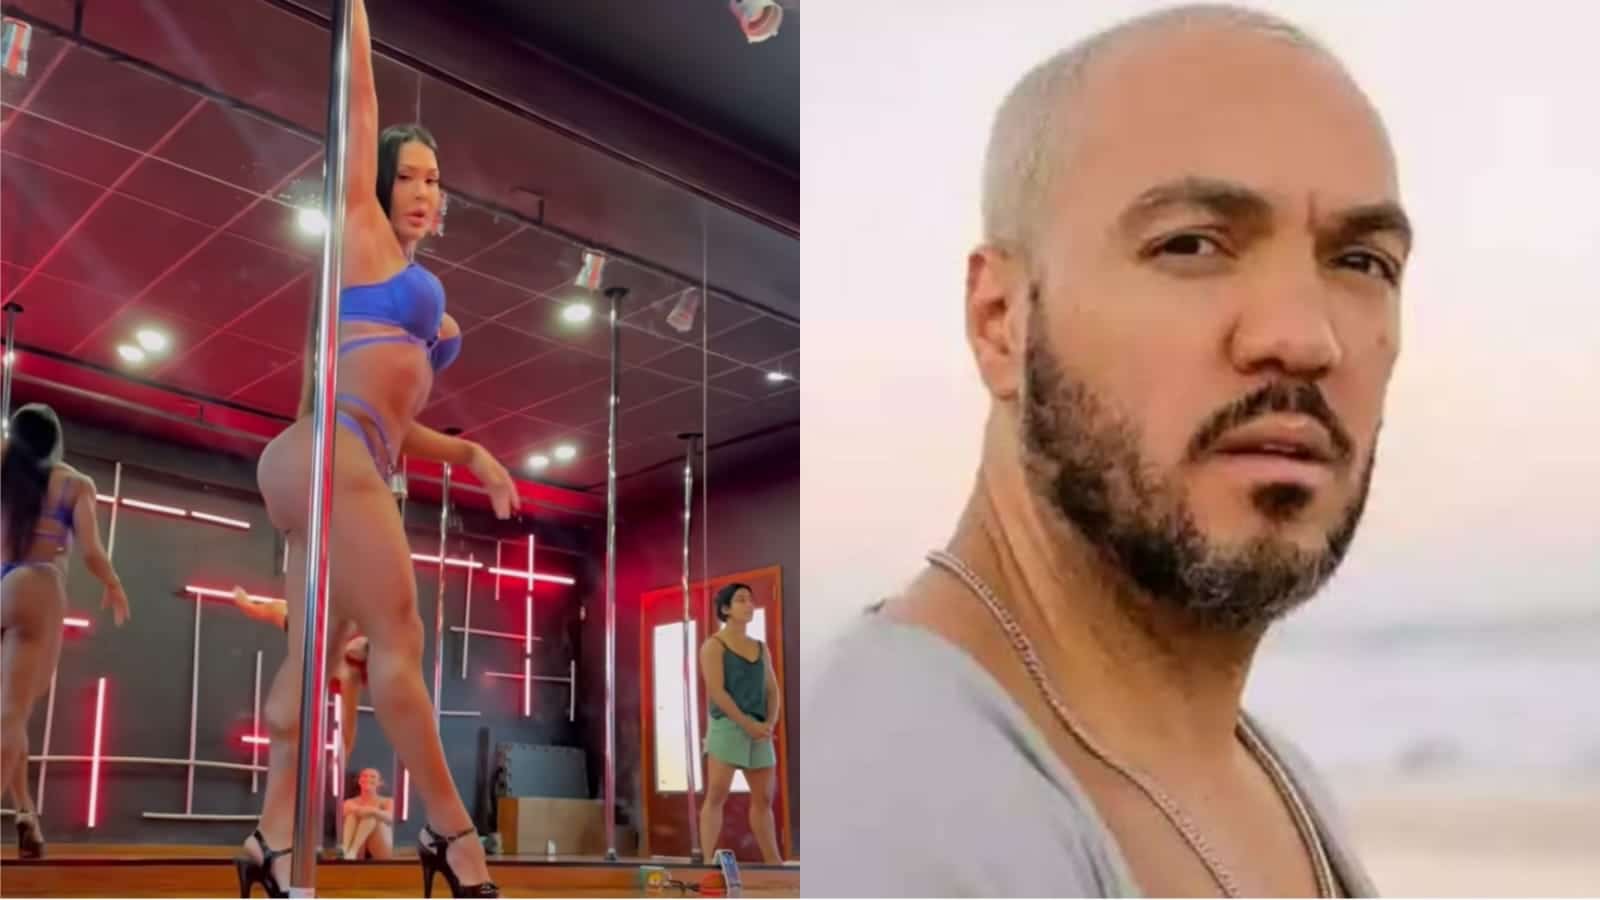 Gracyanne Barbosa provoca ao usar música de Belo em exibição de pole dance